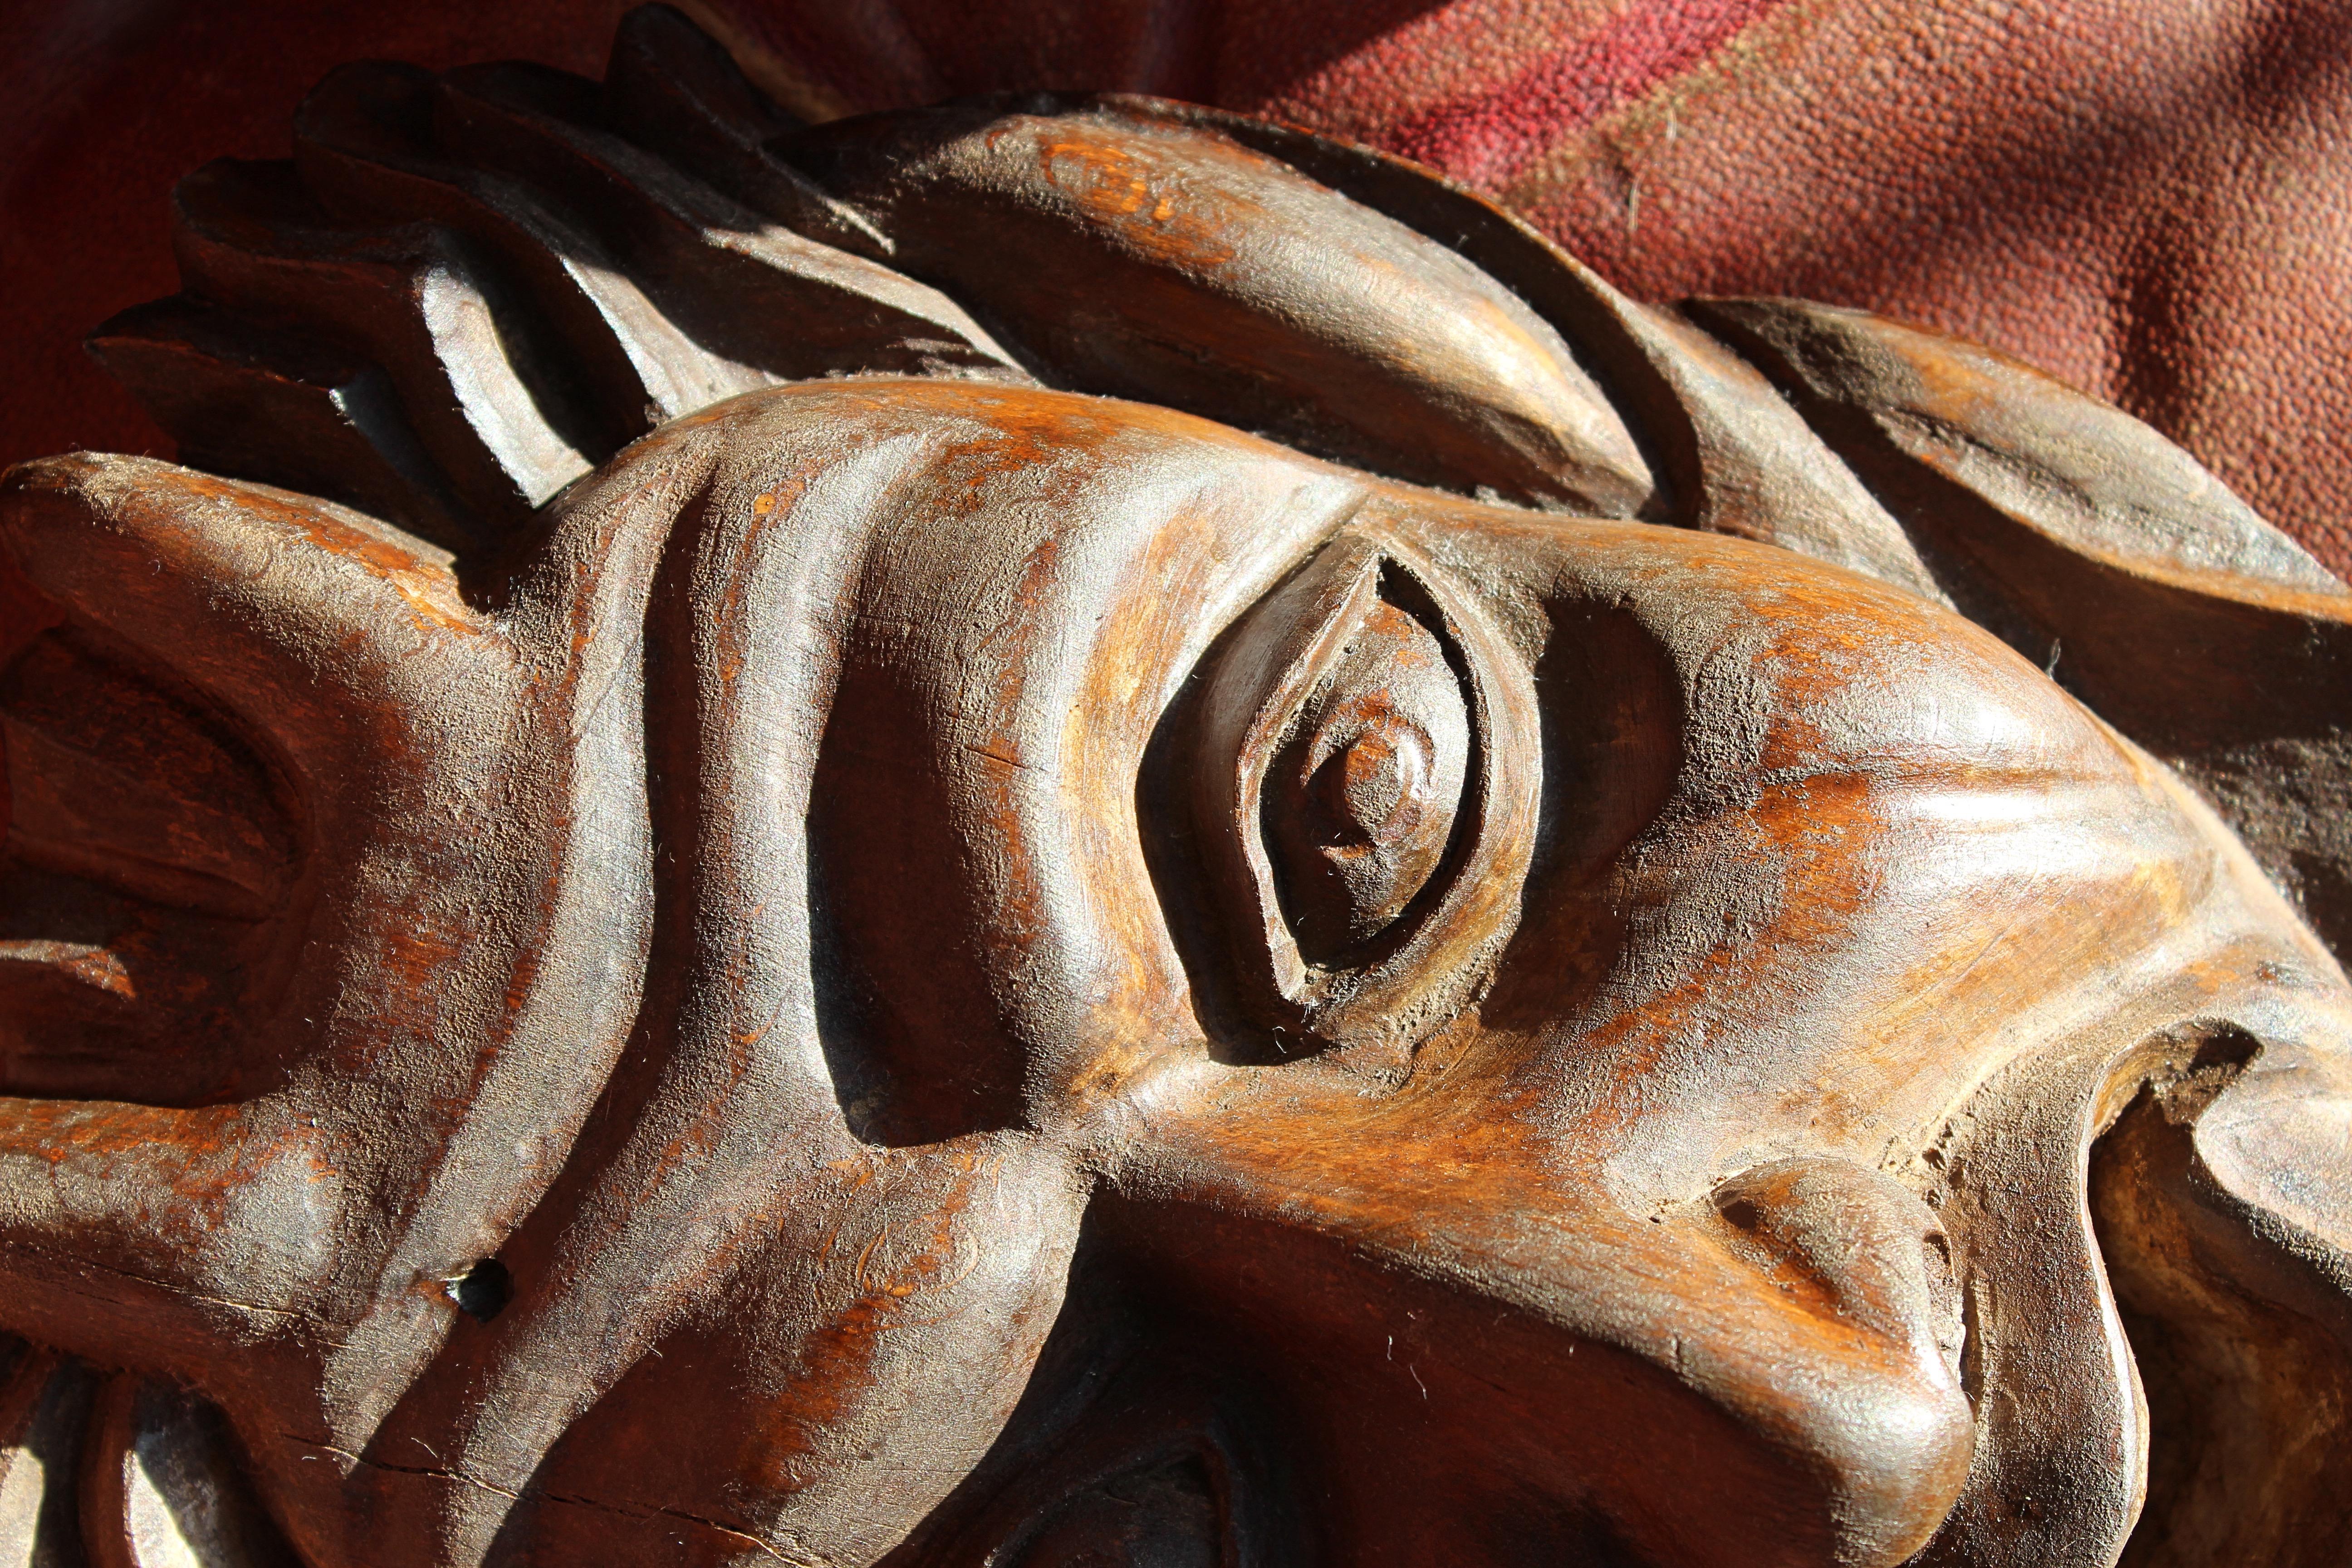 Eine ziemlich frech aussehende geschnitzte und gebeizte Teufelsmaske aus Holz, die dem Alter nach aus dem Jahrhundert stammt. 

Möglicherweise eine Anspielung auf die im japanischen Theater verwendete Hannya-Noh-Maske.

Altersbedingte Verfärbung,